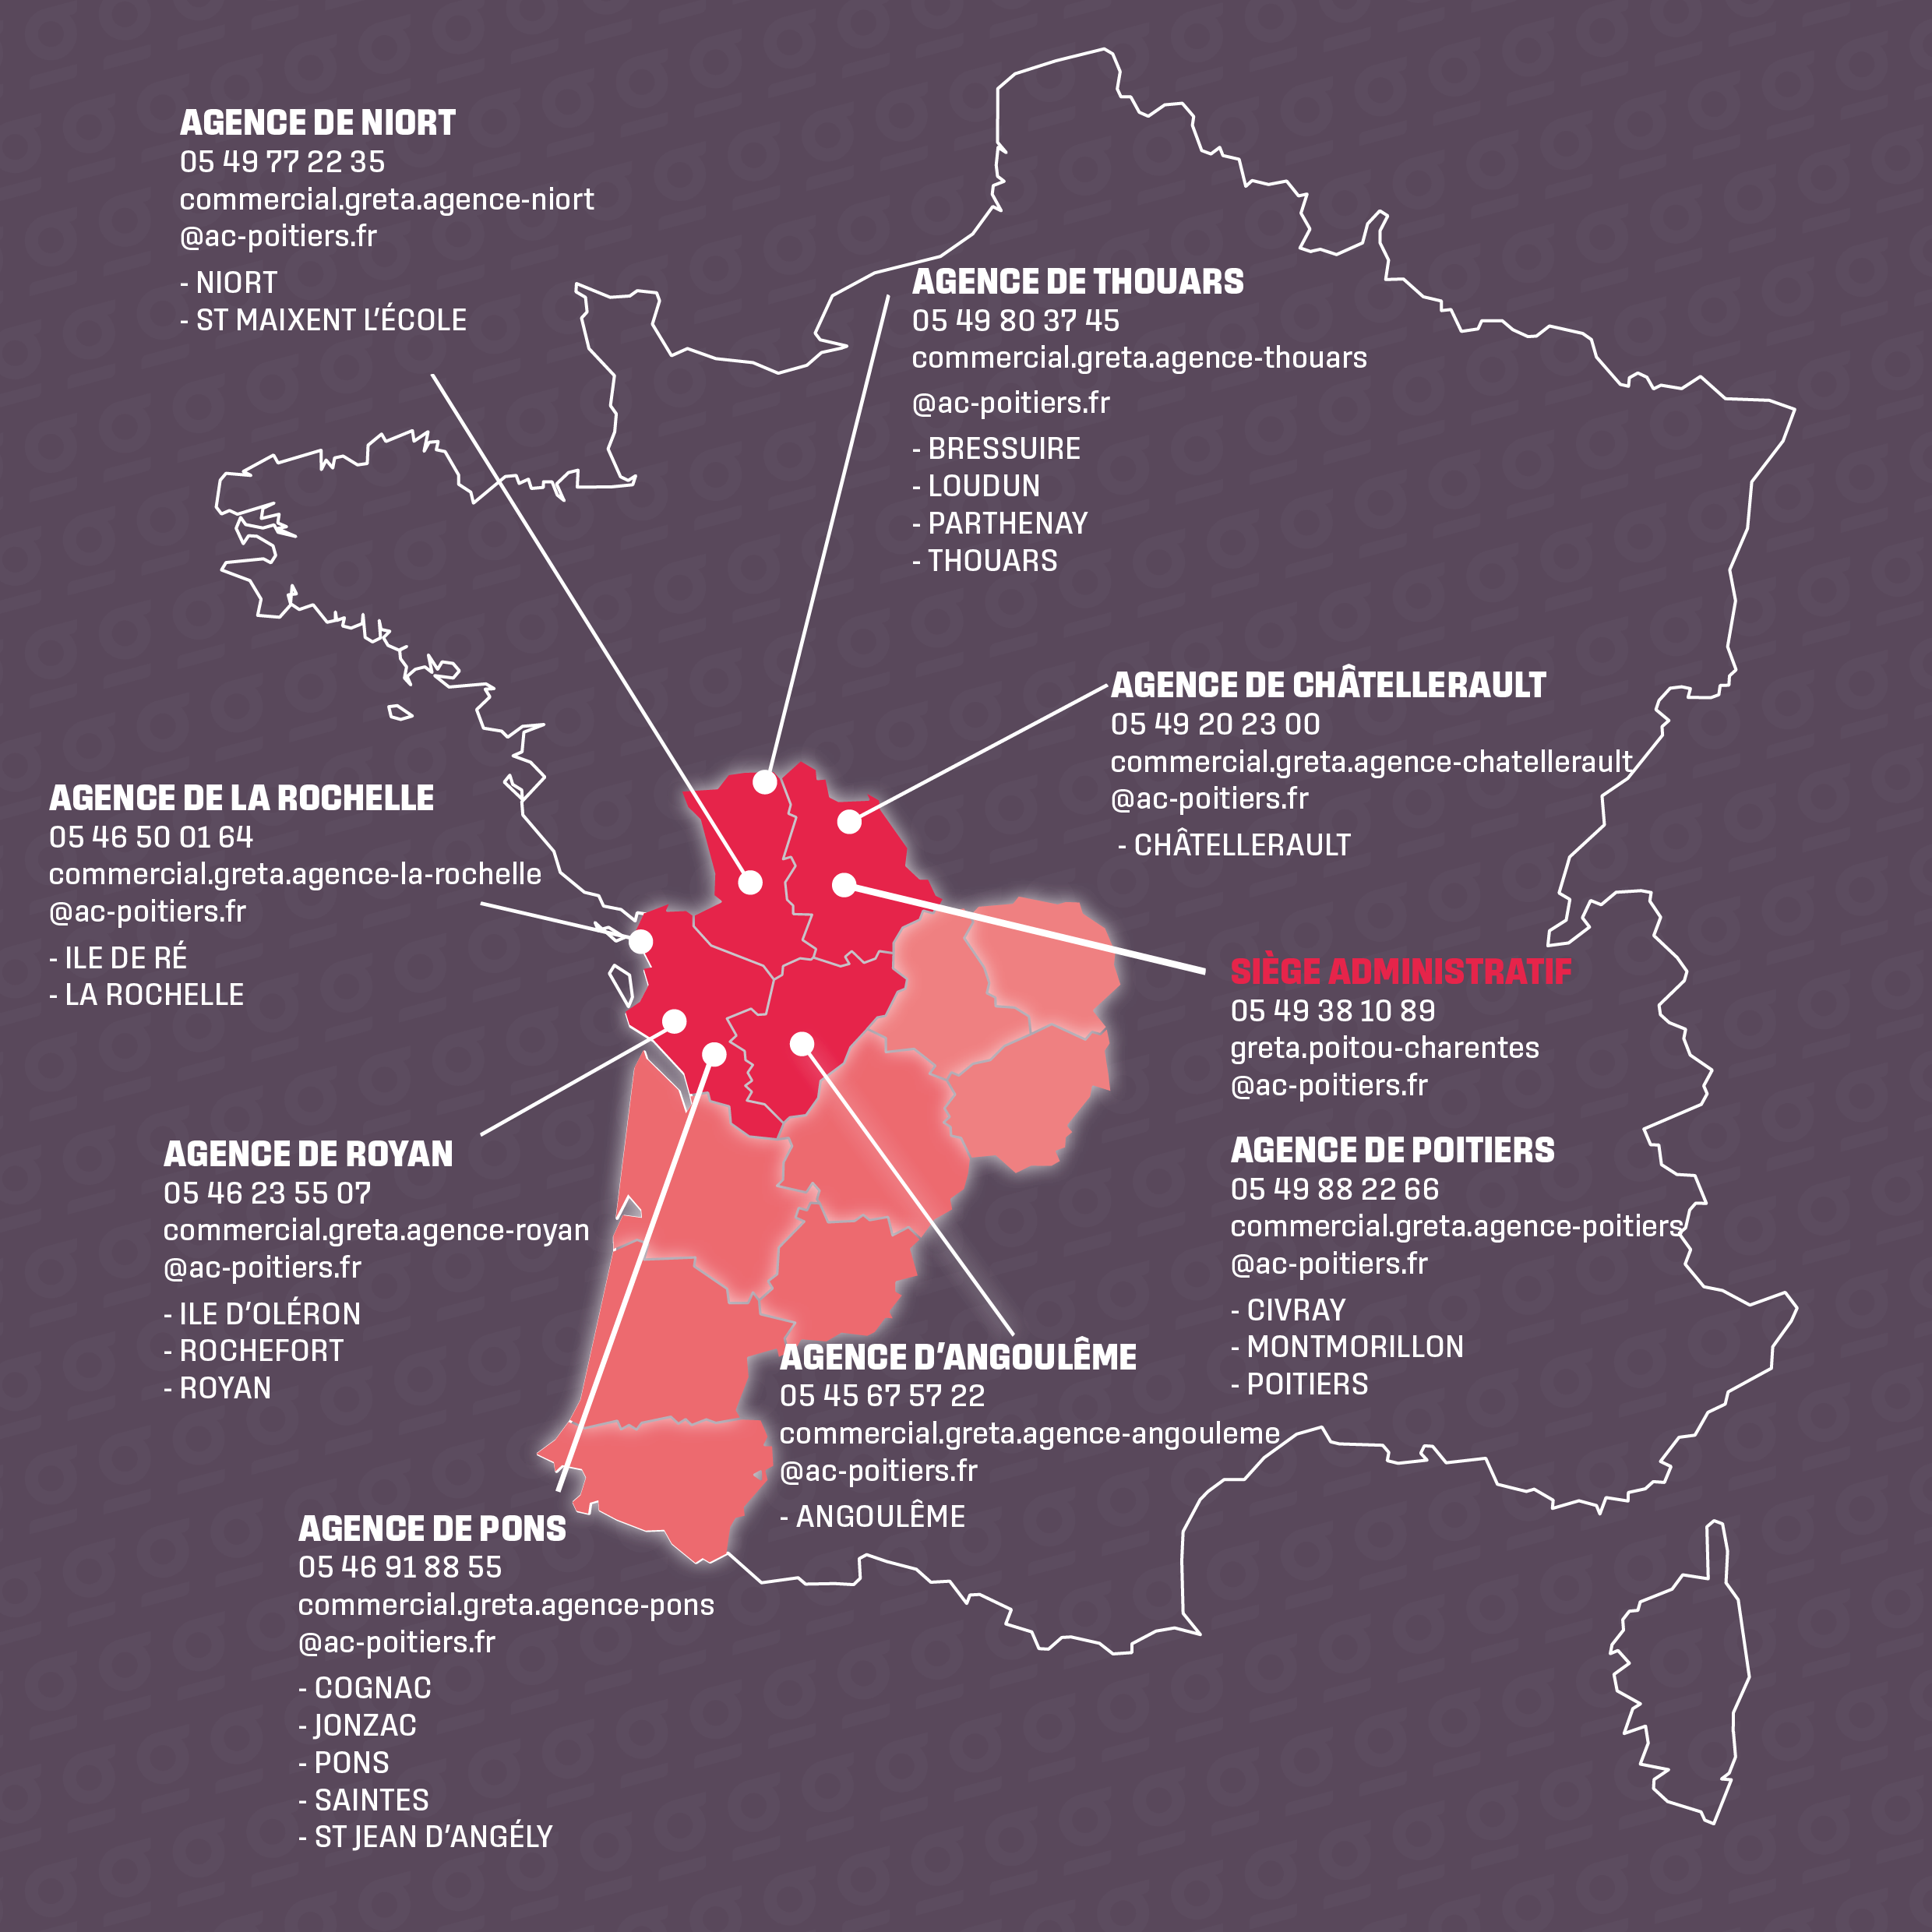 Carte et coordonnées du Greta Poitou-Charentes le siège administratif et les 8 agences